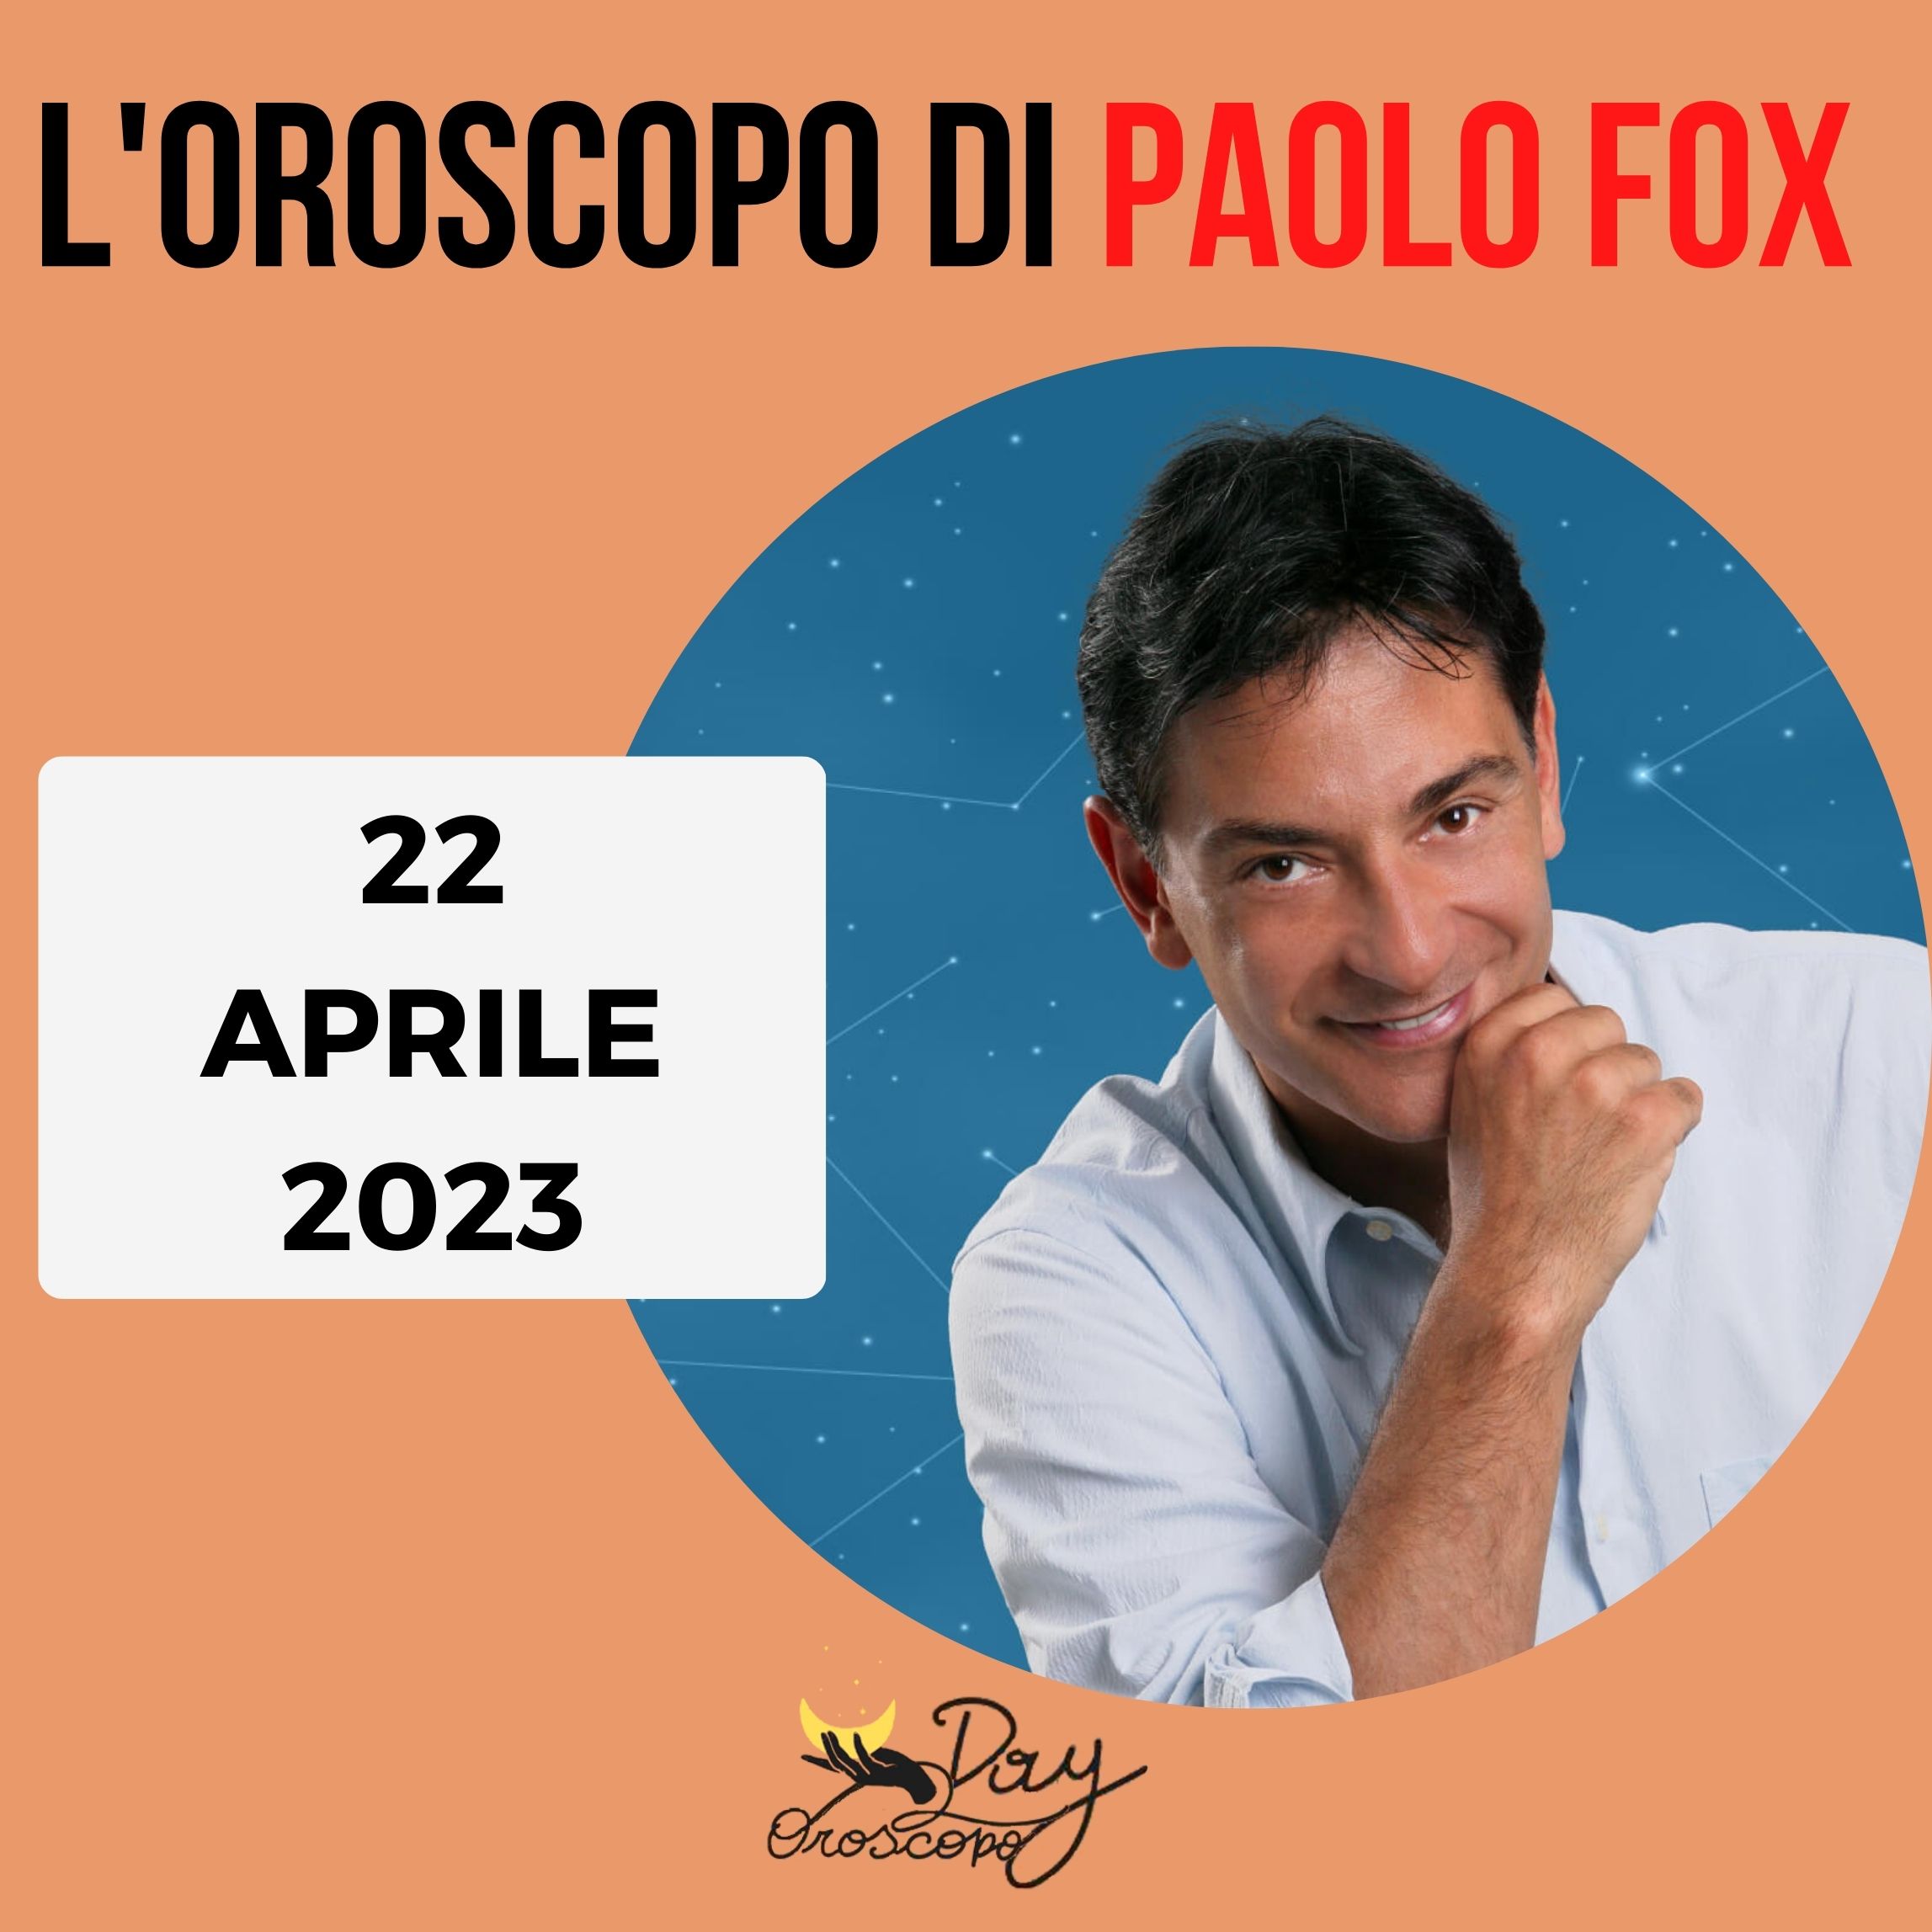 Oroscopo oggi domani Paolo Fox 22 aprile 2023